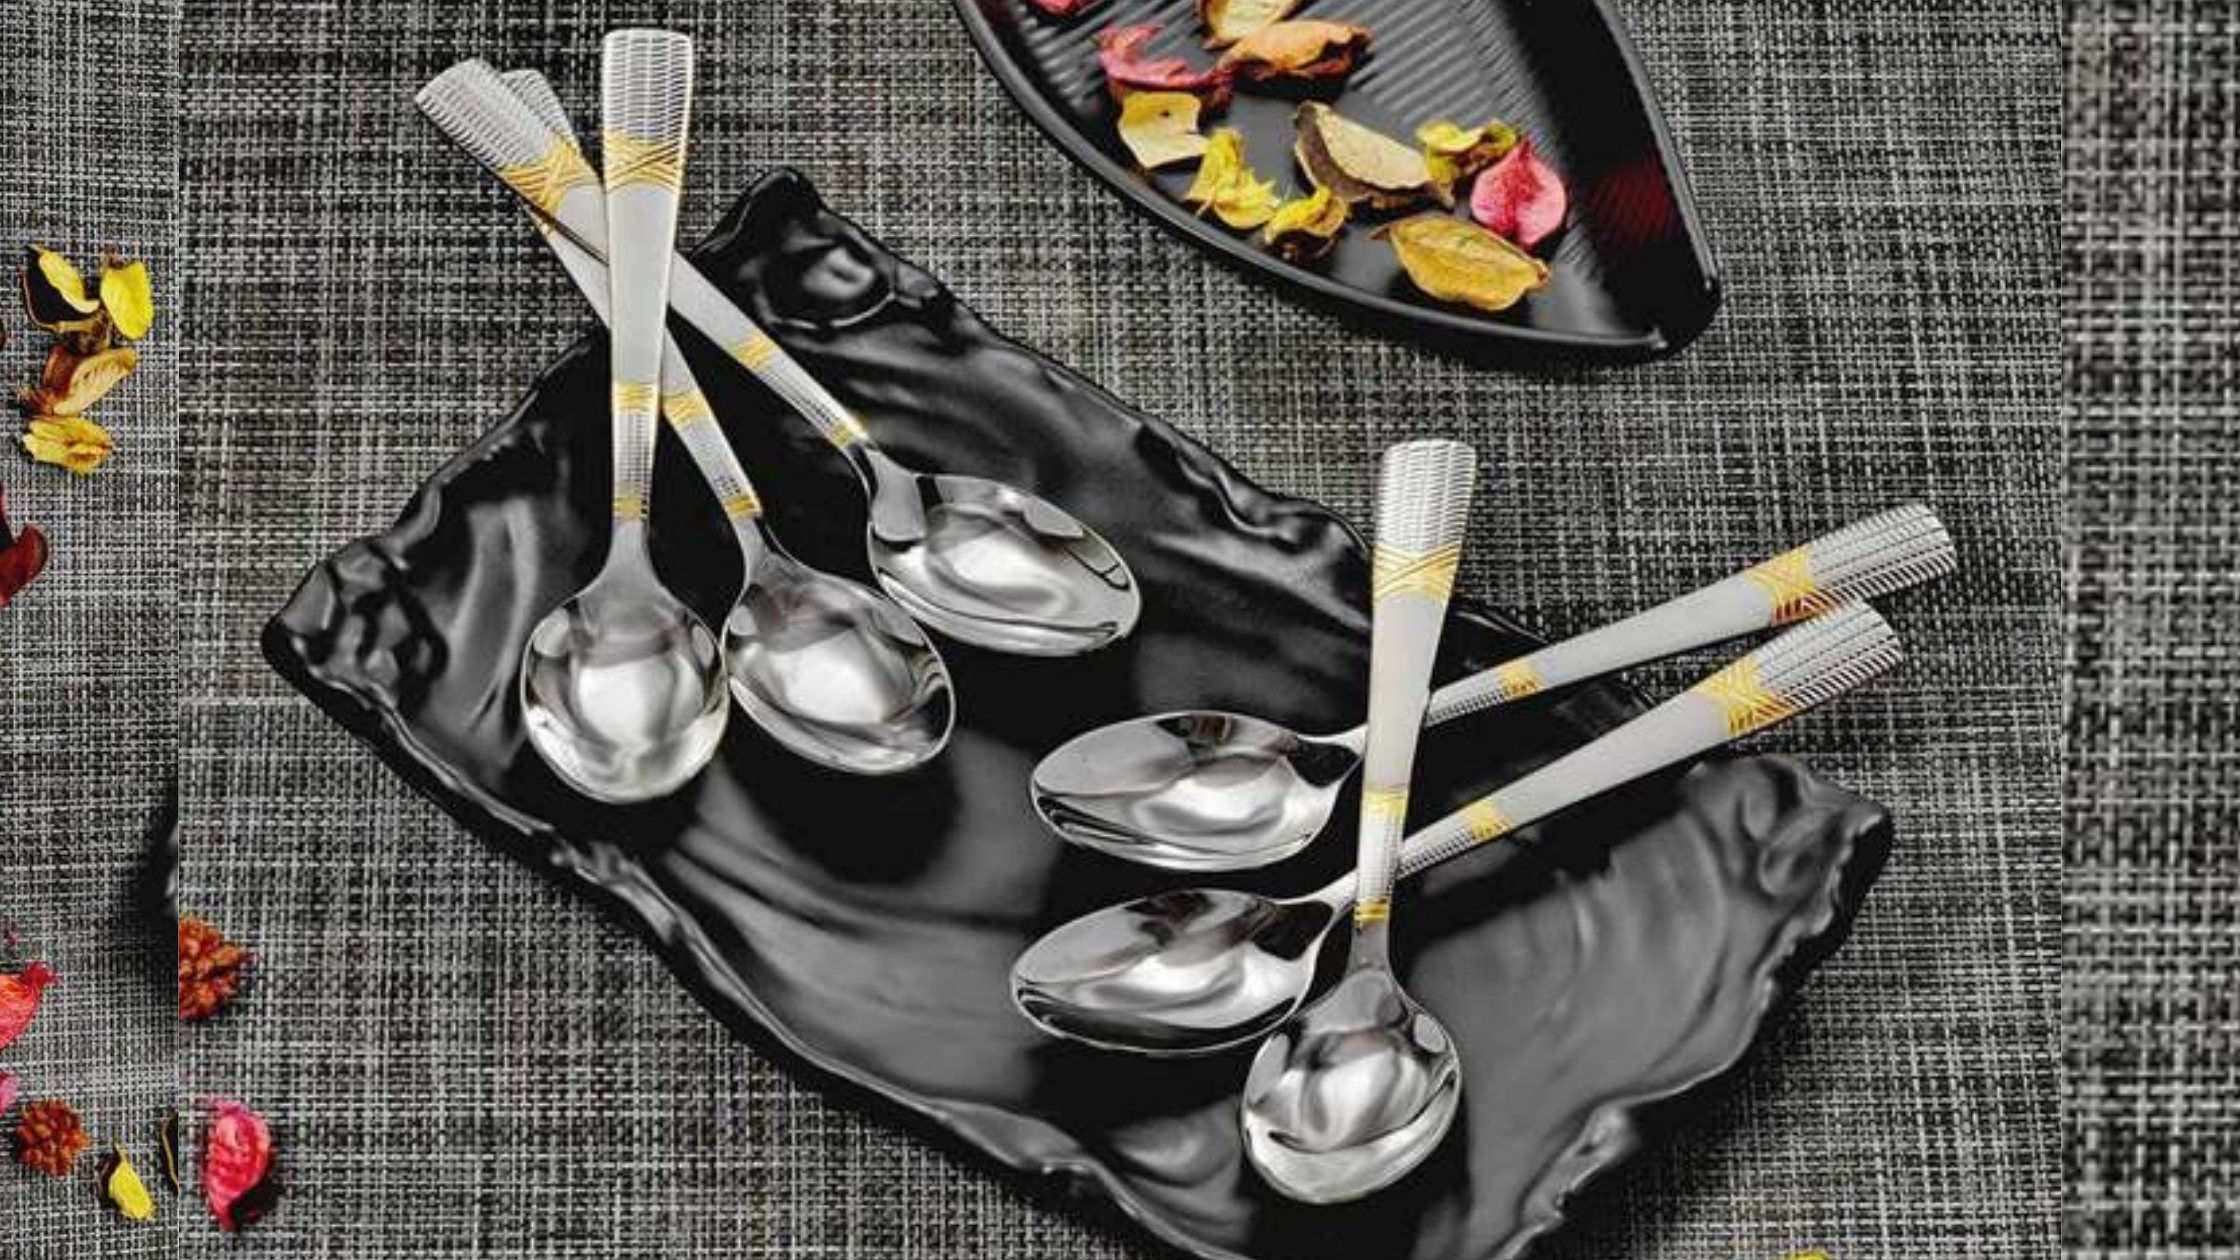 Cutlery Tray Home Organization Ideas